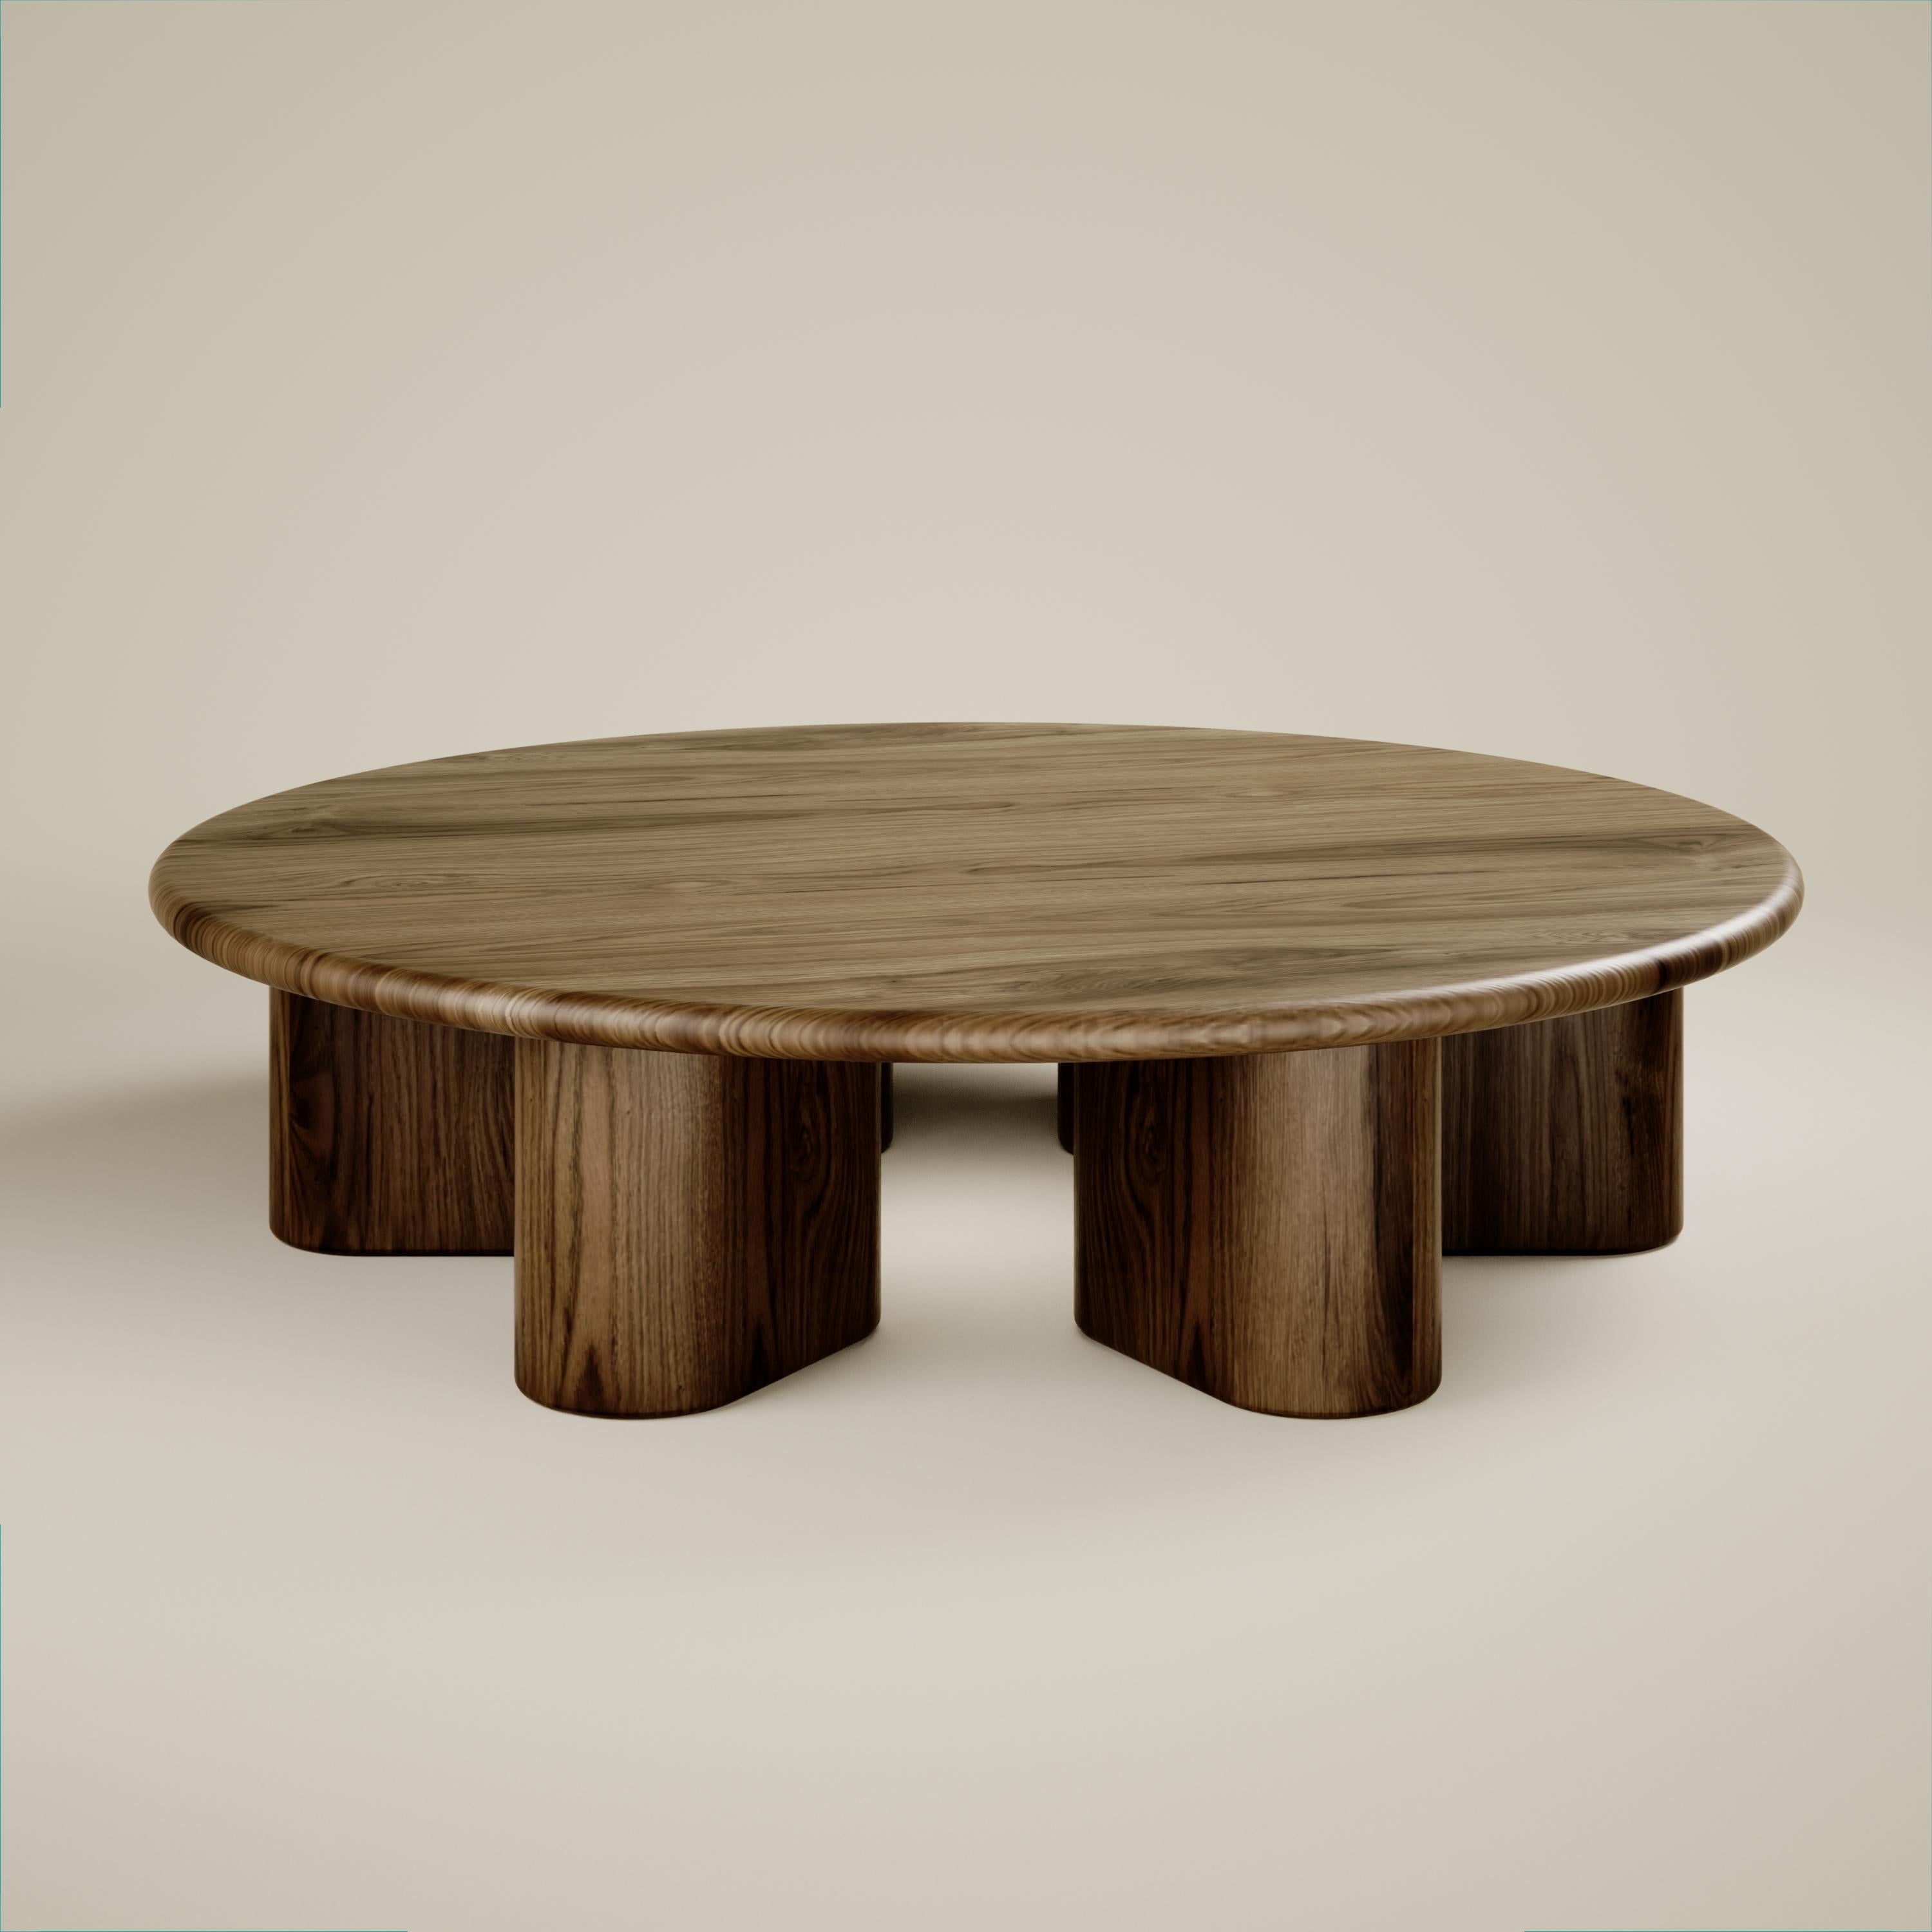 Hochwertiger runder Tisch aus massivem Walnussholz, entworfen von Vincent Mazenauer. Der Tisch kann auf Wunsch auch in anderen Massivhölzern wie Eiche, Eukalyptus,... hergestellt werden.
Dieser Tisch stammt aus der Element Couchtisch-Kollektion von